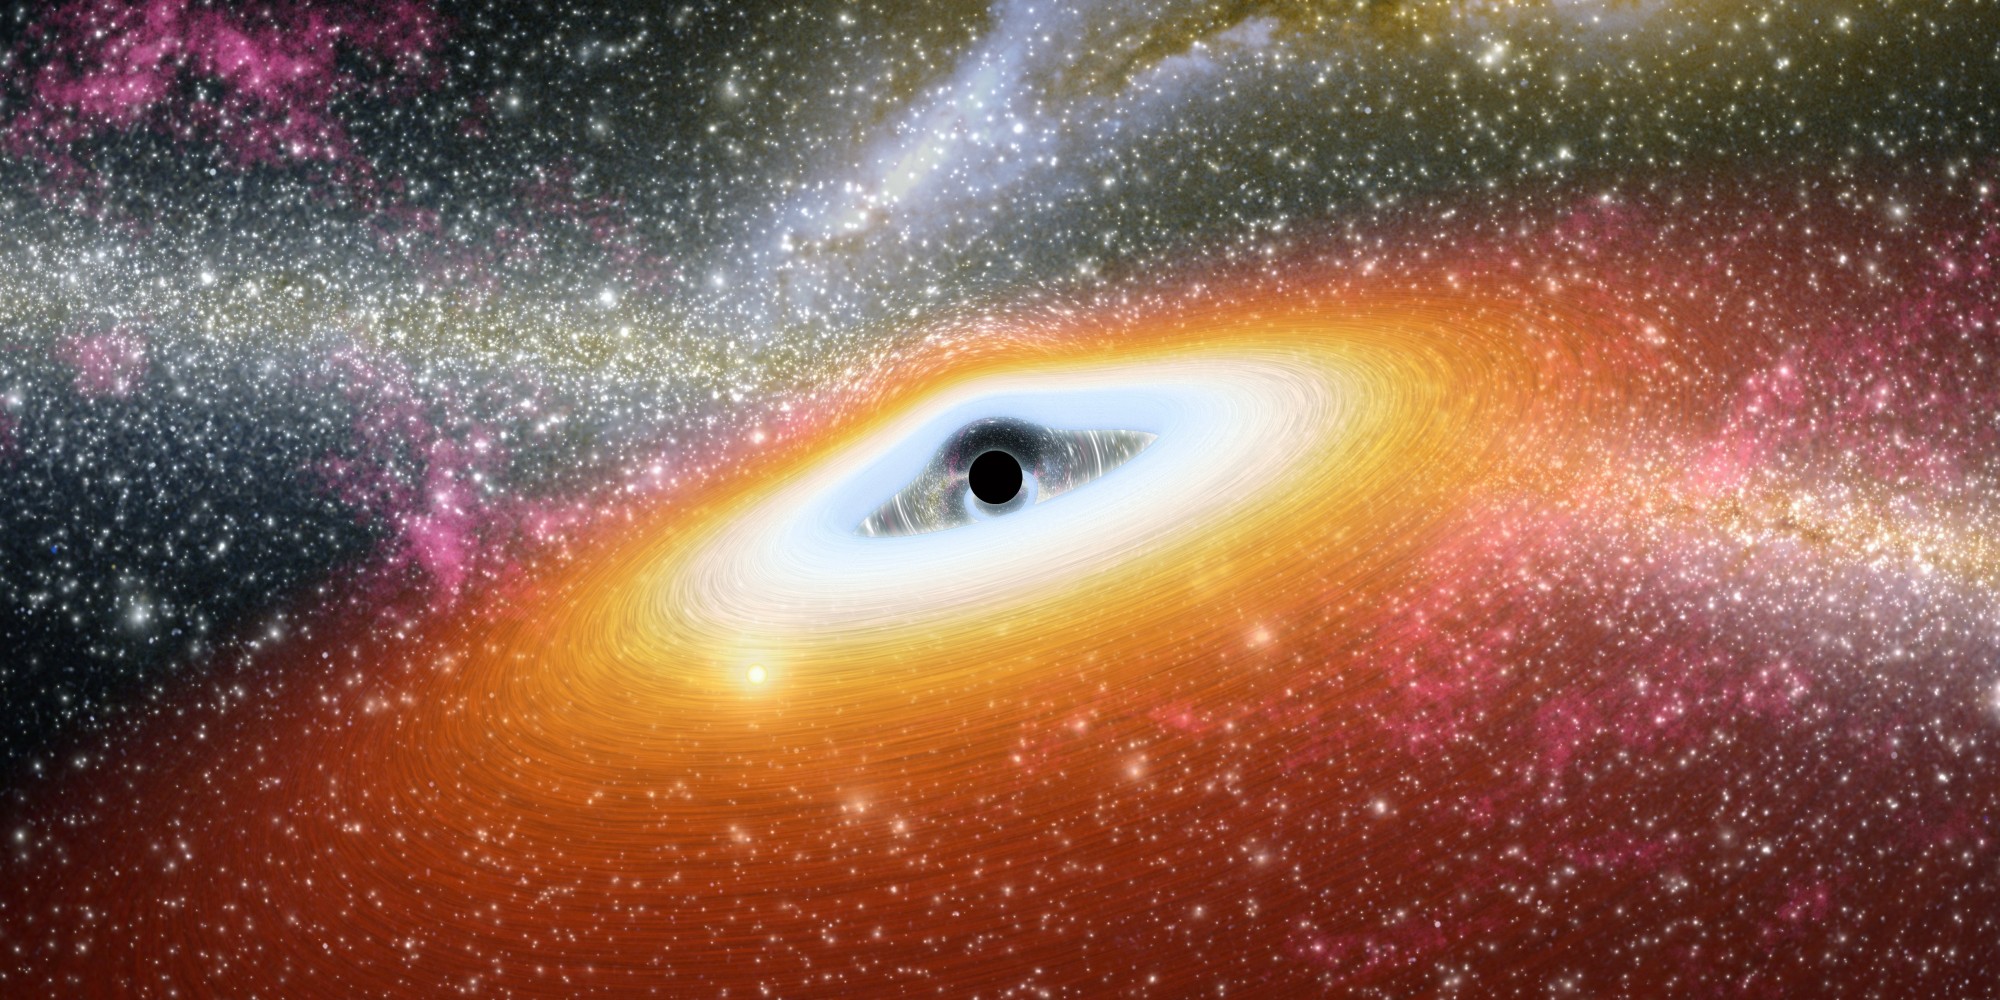 Siêu hố đen này là một khám phá thế giới gây nhiều tranh cãi cho giới khoa học